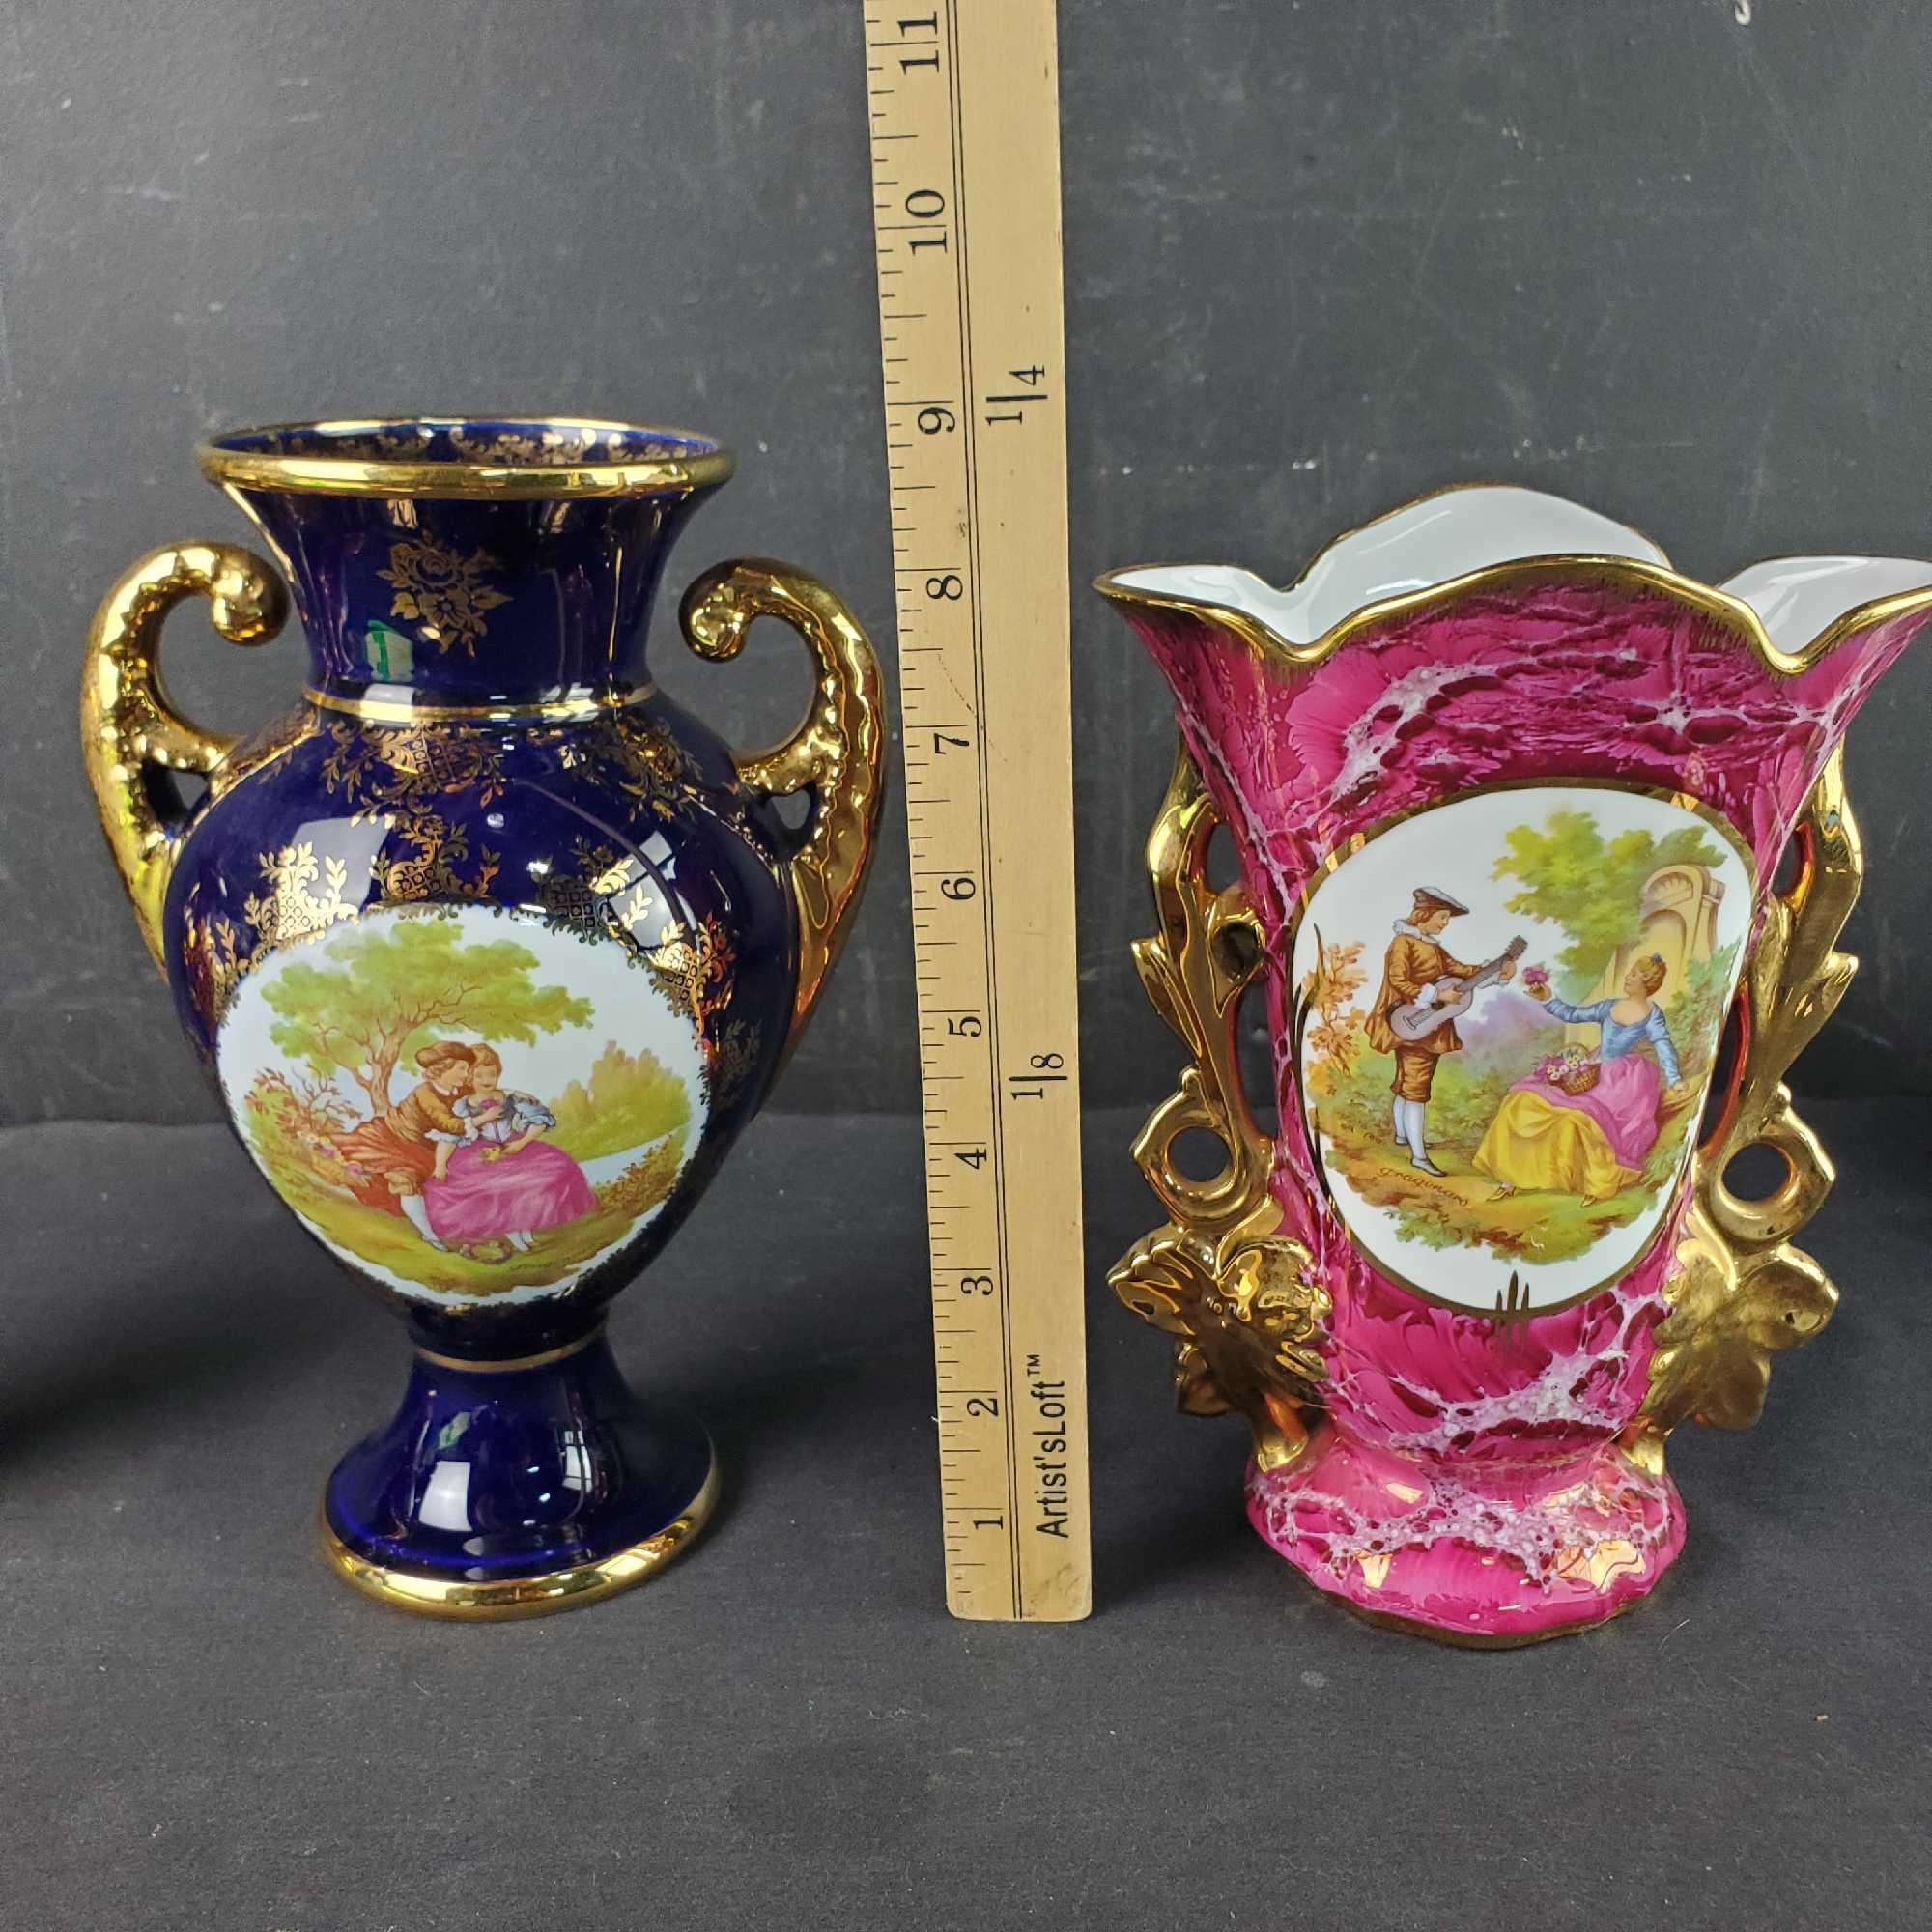 3 Vintage Limoges vases made in France